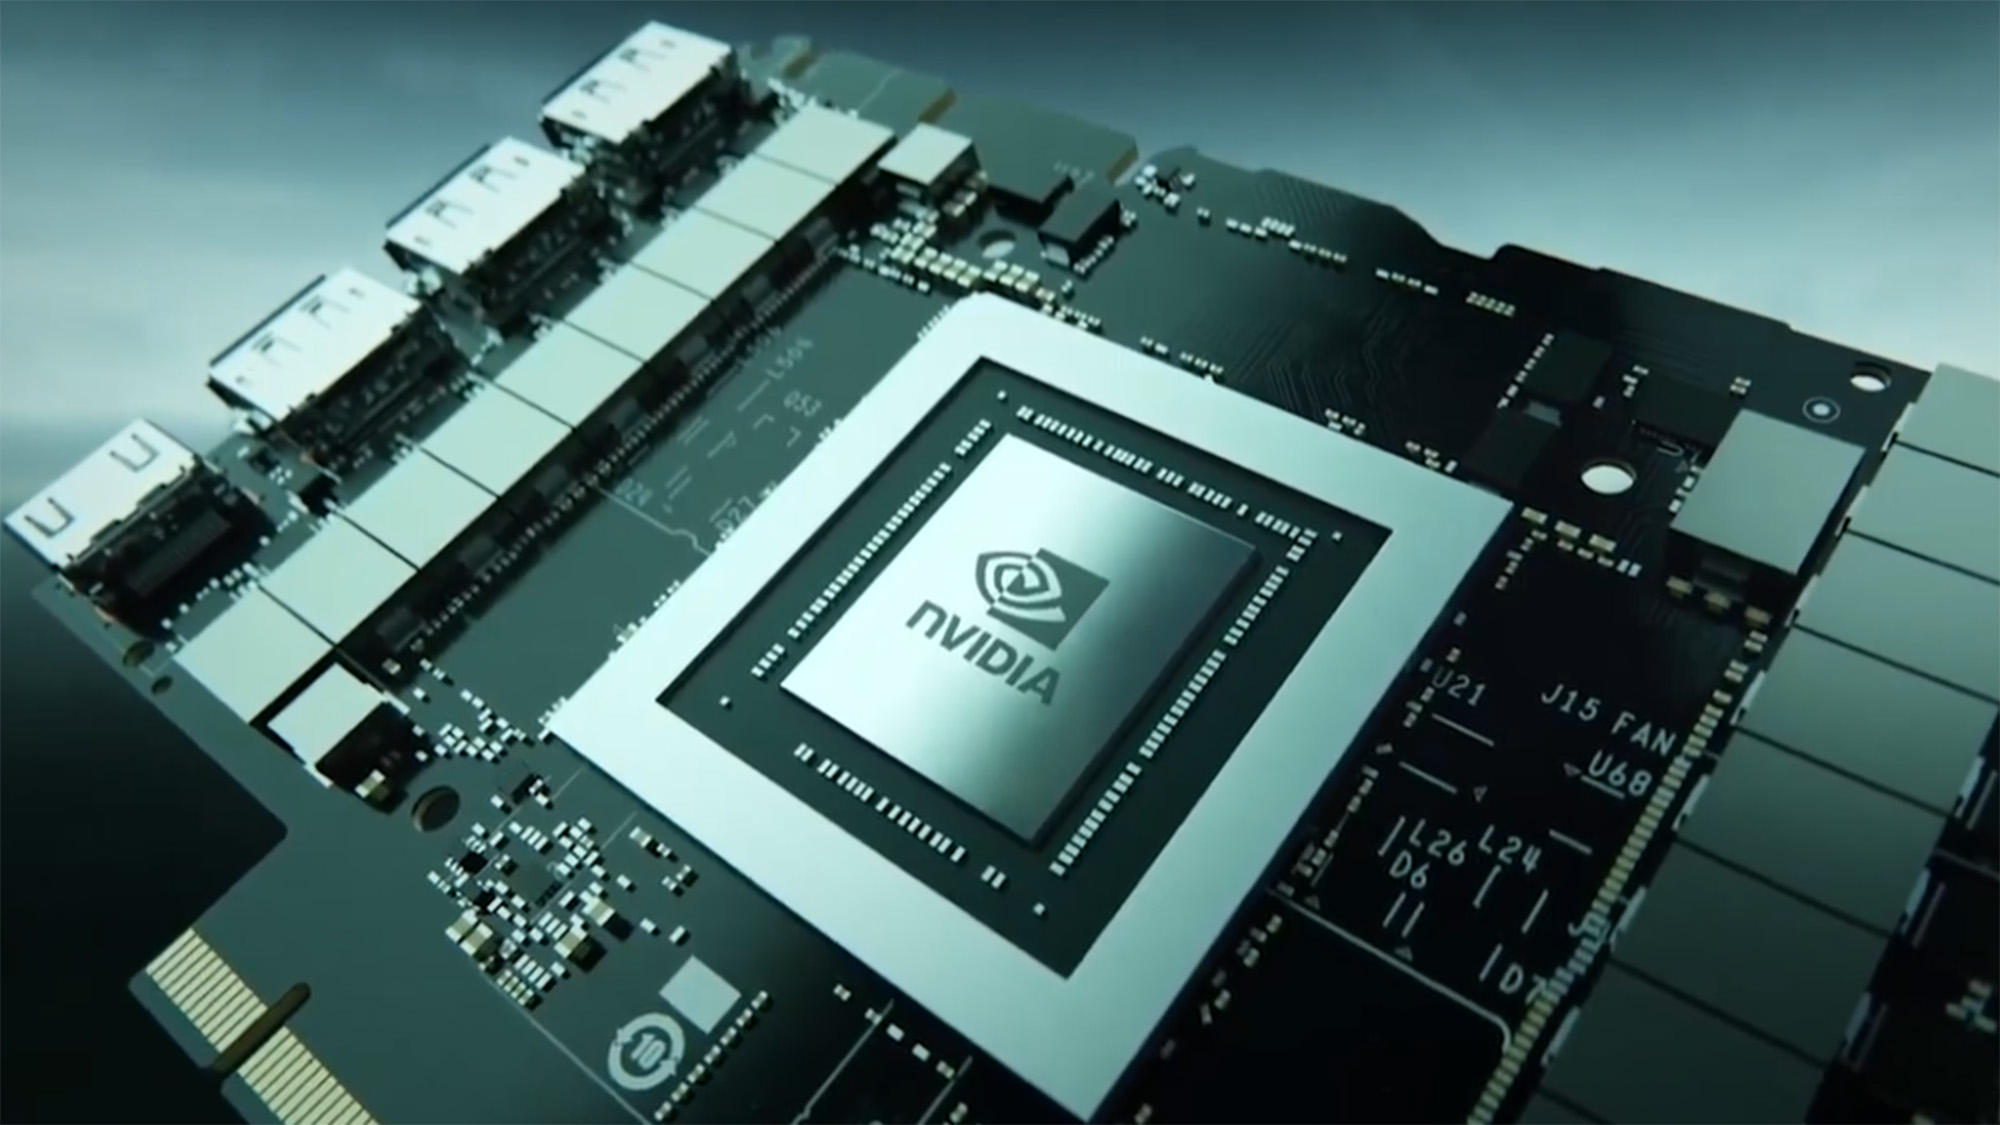 Schlecht Neiegkeeten Intel An Amd - Nvidia Rtx 4090 kéint am August verkaaft ginn